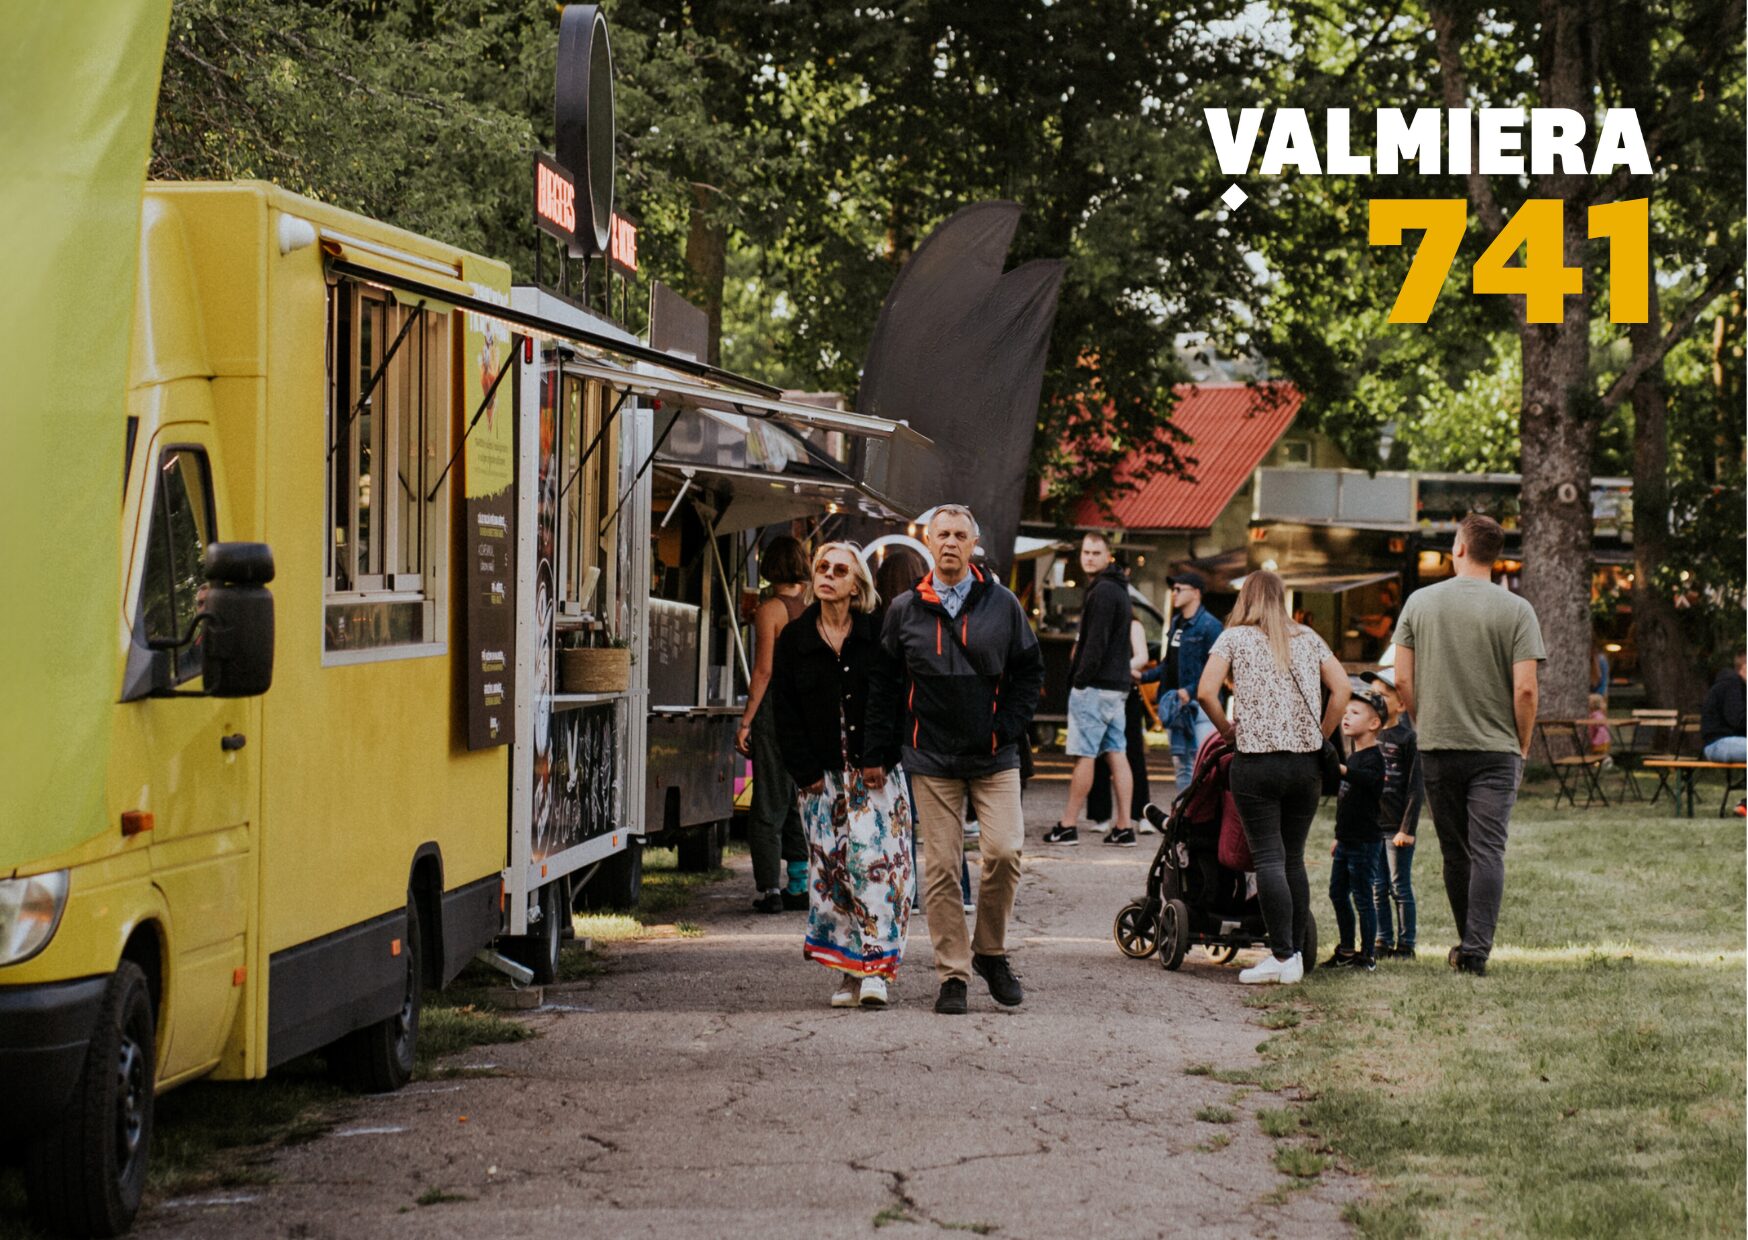 Aicinām pieteikties sabiedriskās ēdināšanas pakalpojuma sniegšanai Valmieras pilsētas svētkos